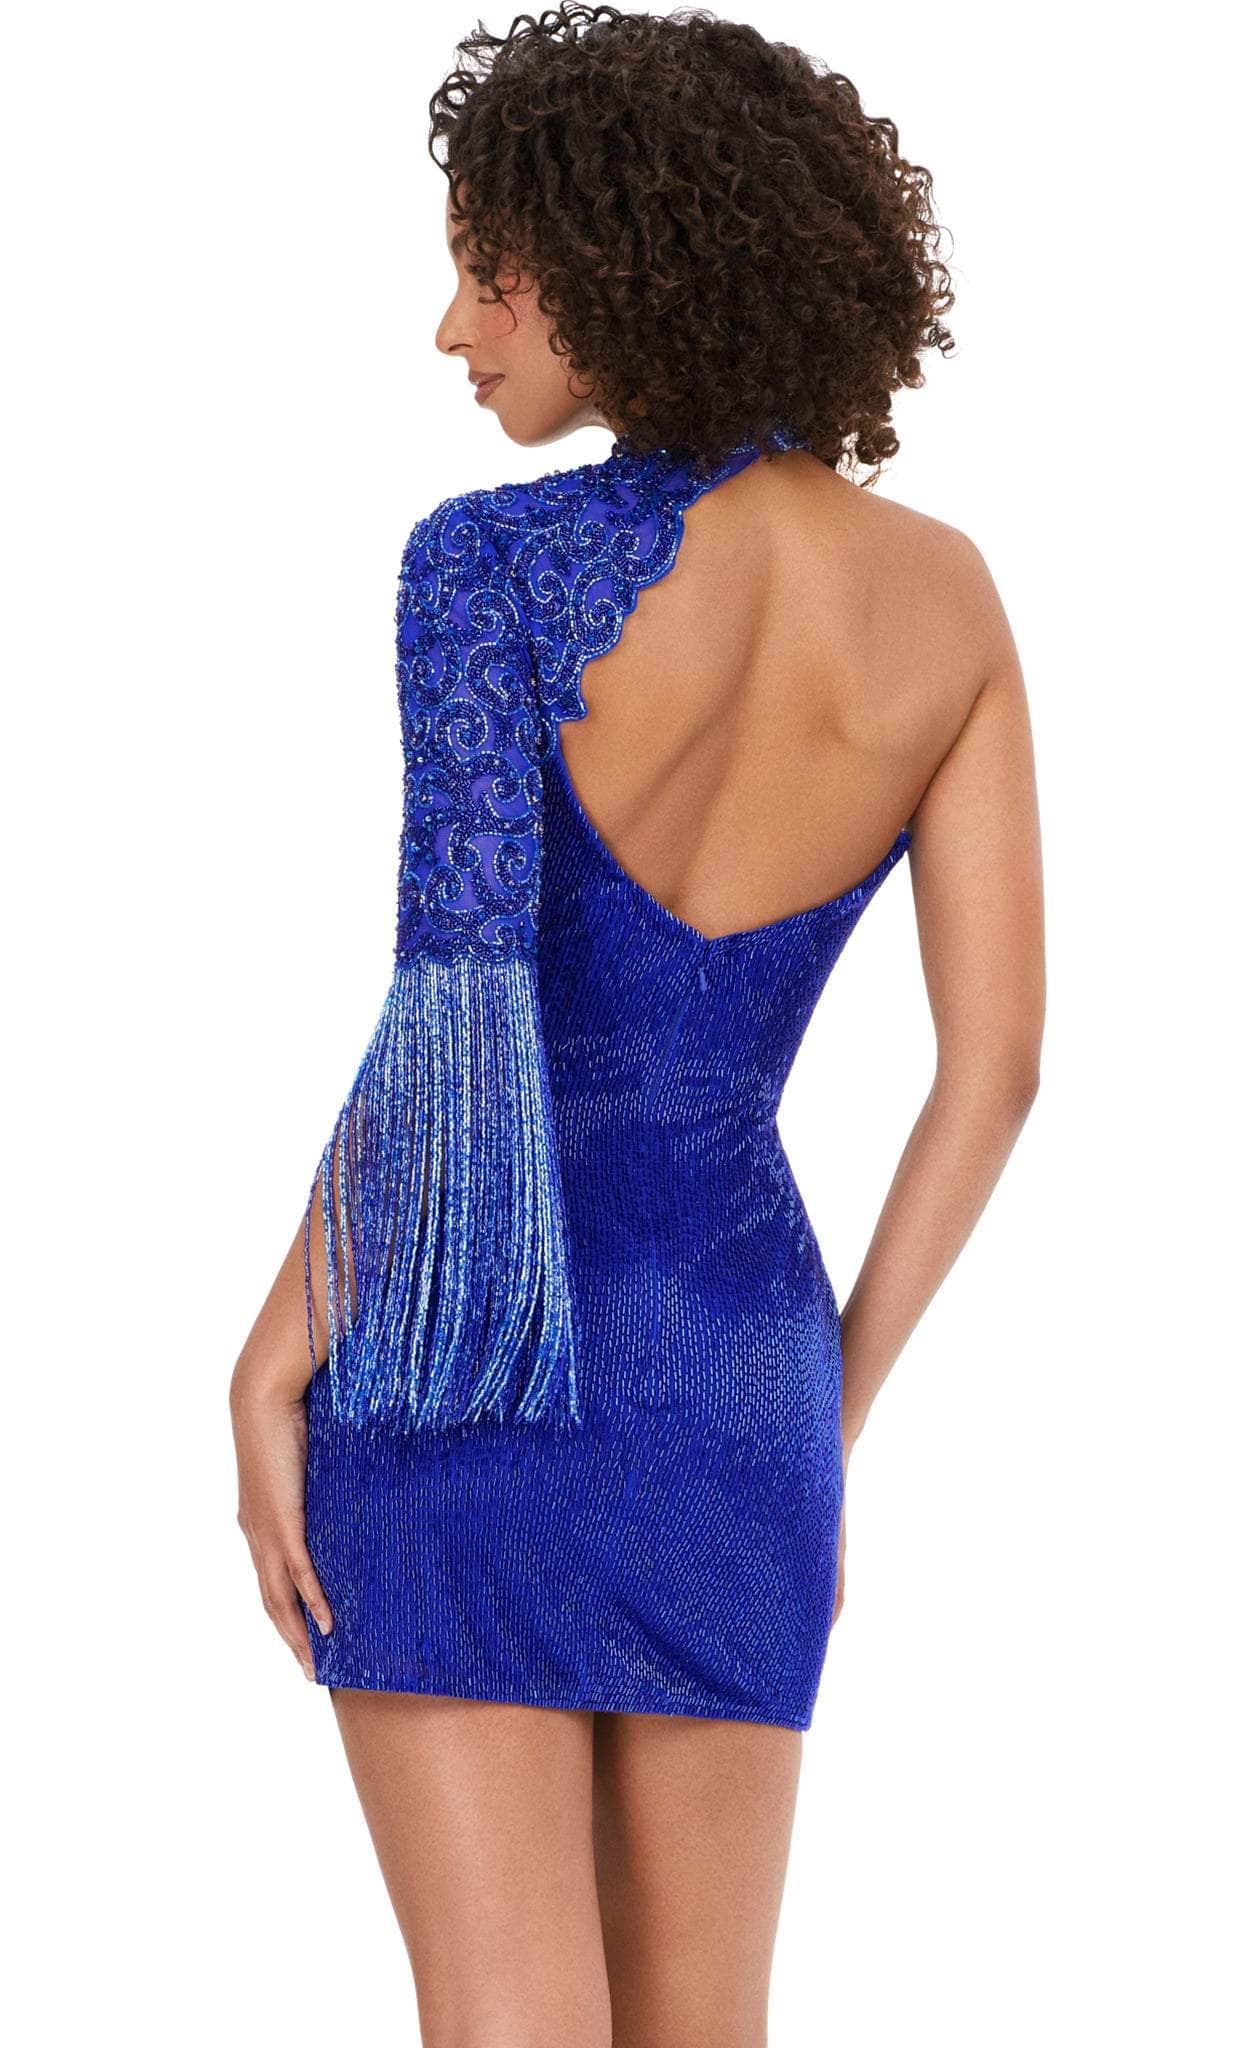 ashley lauren 4586 - beaded dress